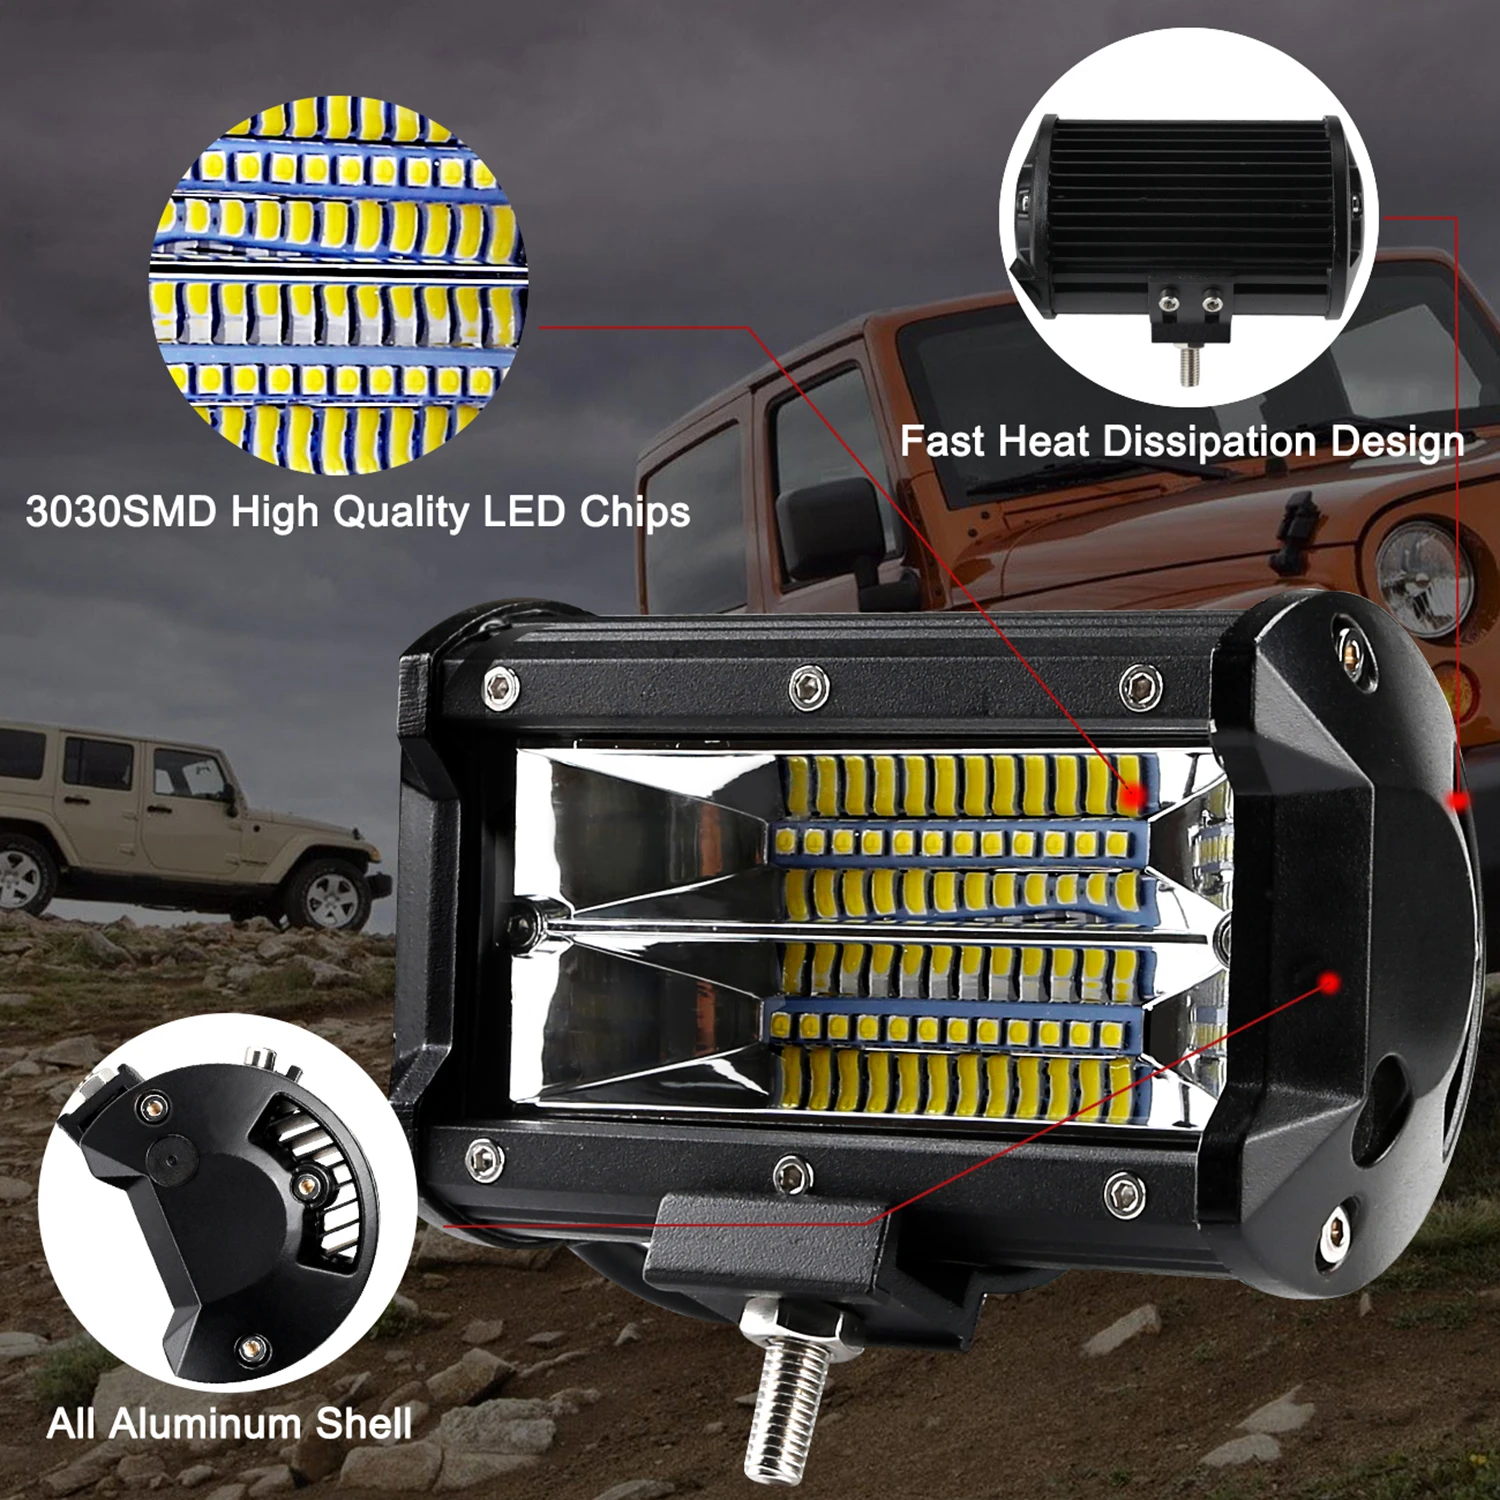 " светодиодный светильник 12 в 24 В для вождения, рабочий светильник, автомобильный налобный фонарь для внедорожников, грузовиков, авто 4WD 4x4, УАЗ, рампа мотоцикла, точечный прожектор, комбинированный луч